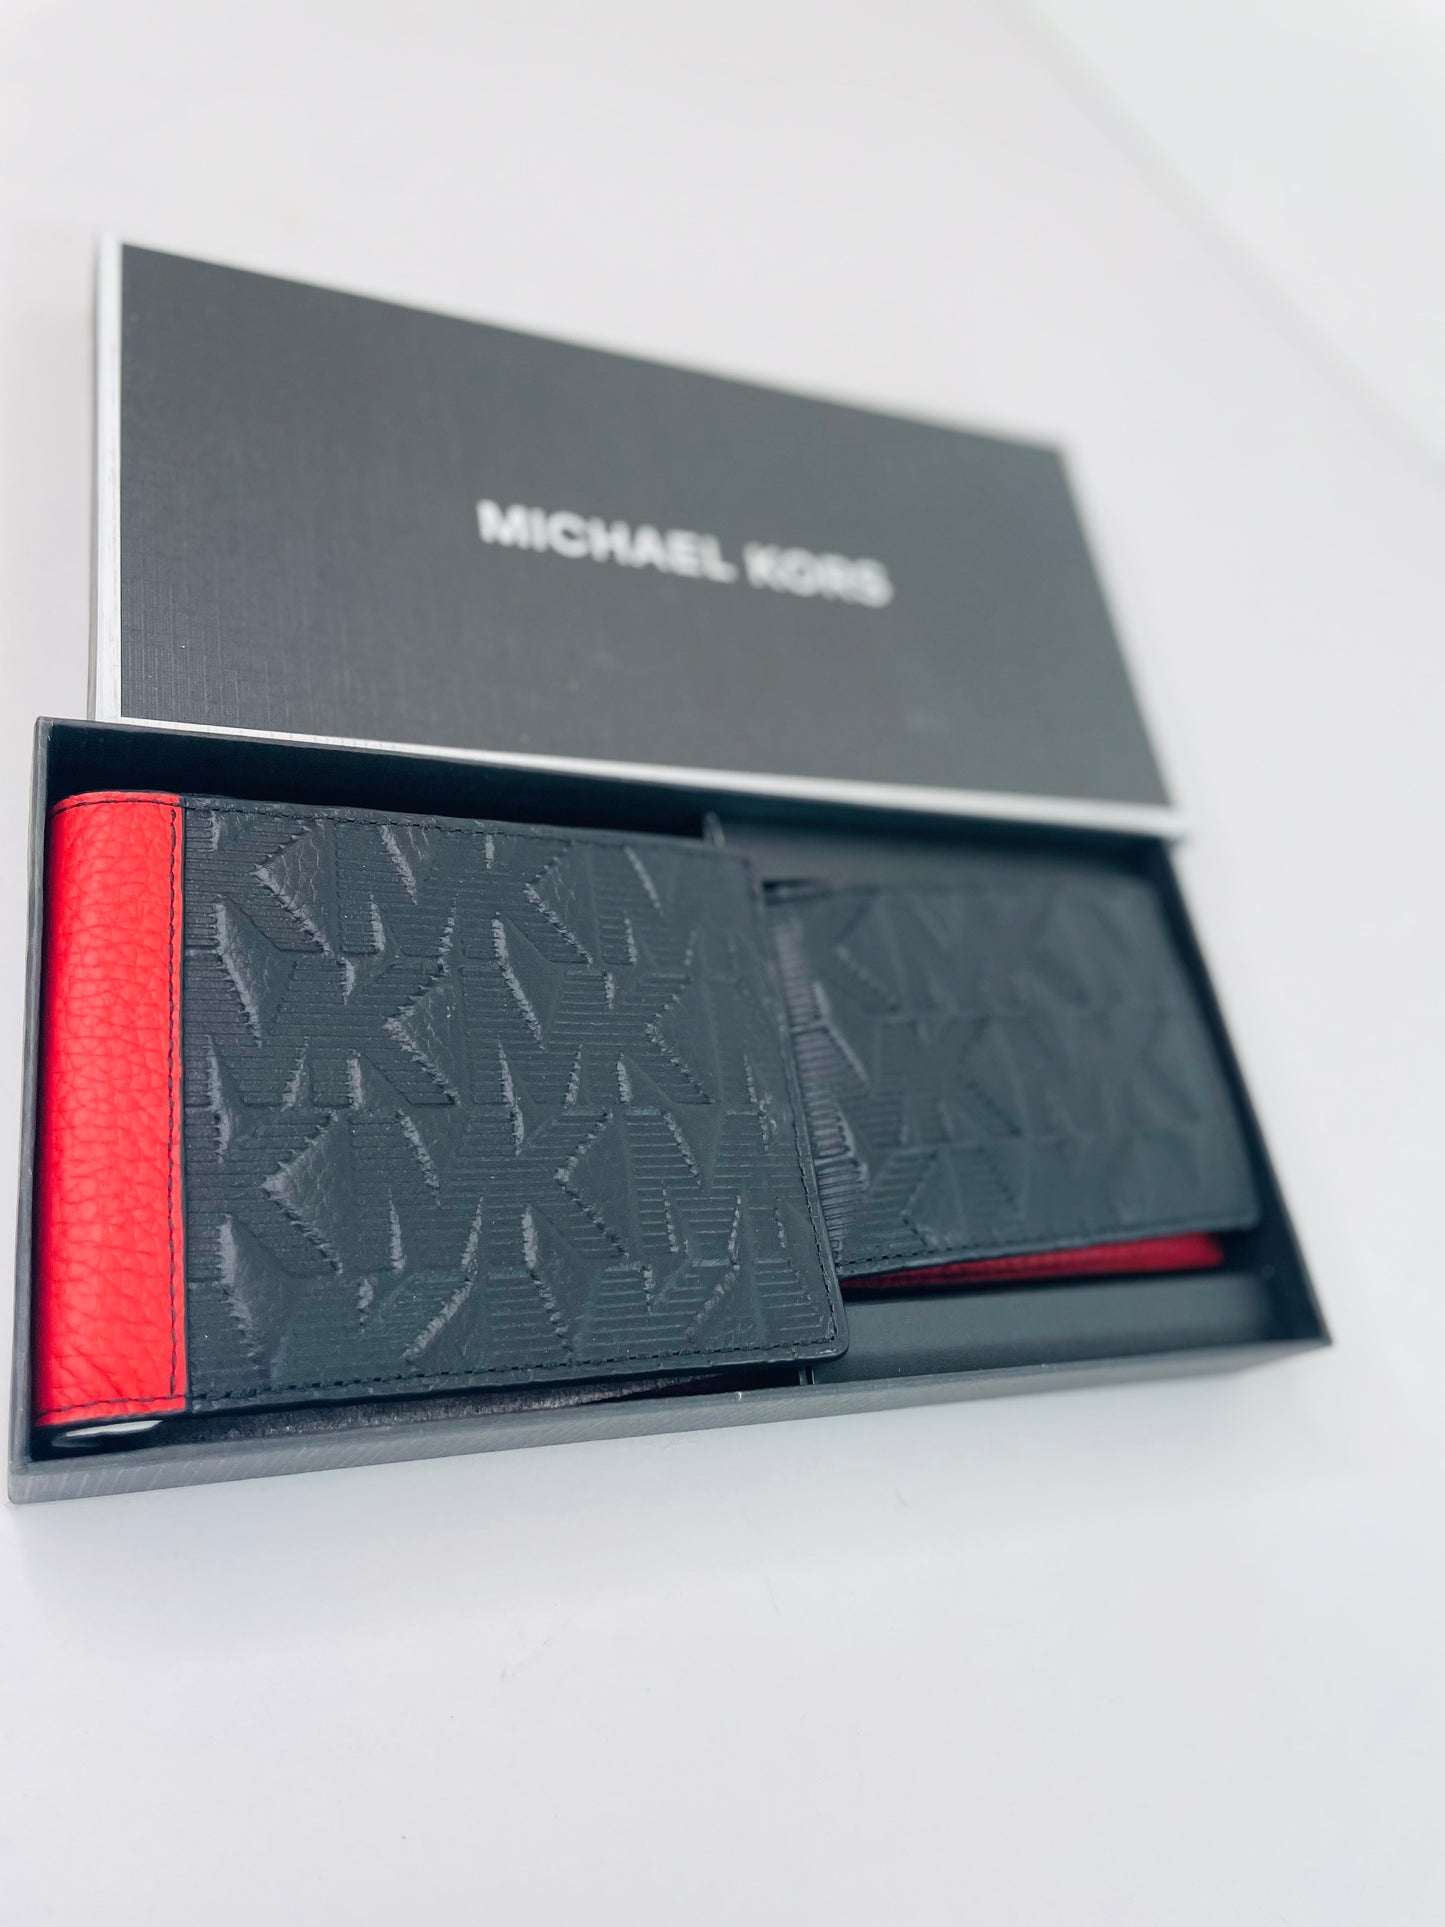 Michael kors wallet & card holder set